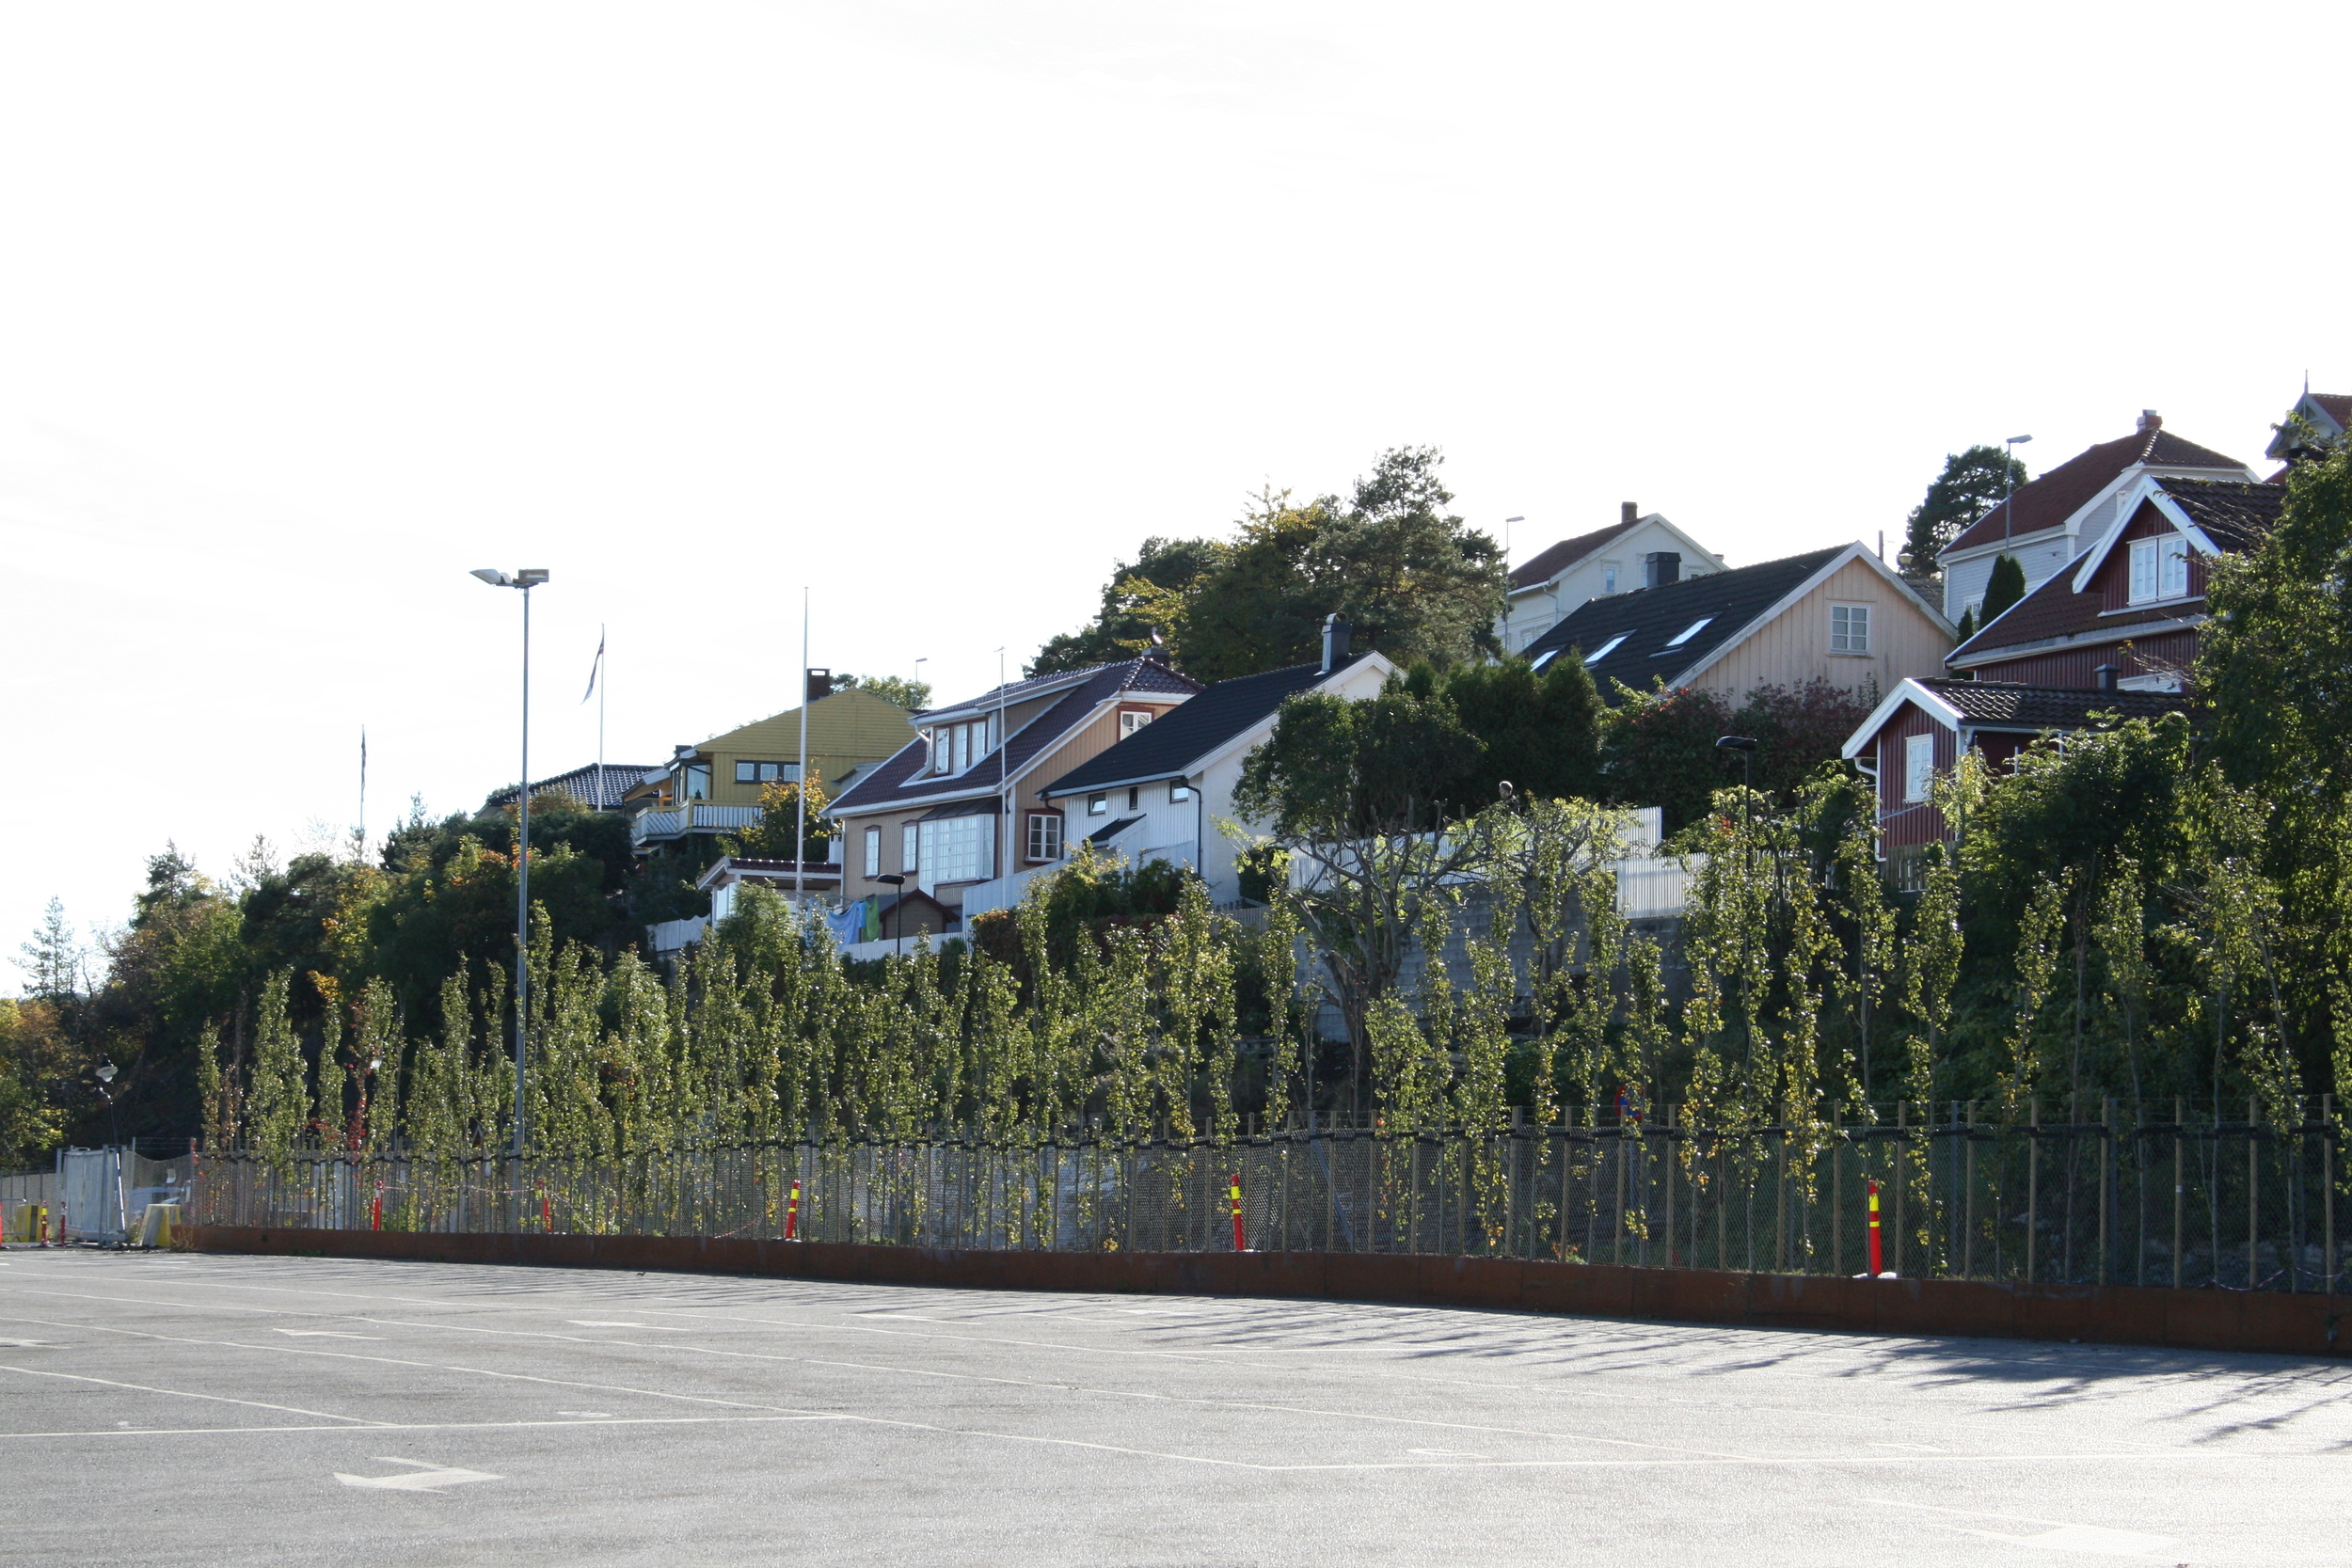   Ei 80 meter lang plantekasse av skipstål gir rom for en tett planting av søyleosp, som danner skjerming mellom boligene på knausene og de store flatene i havneområdet  